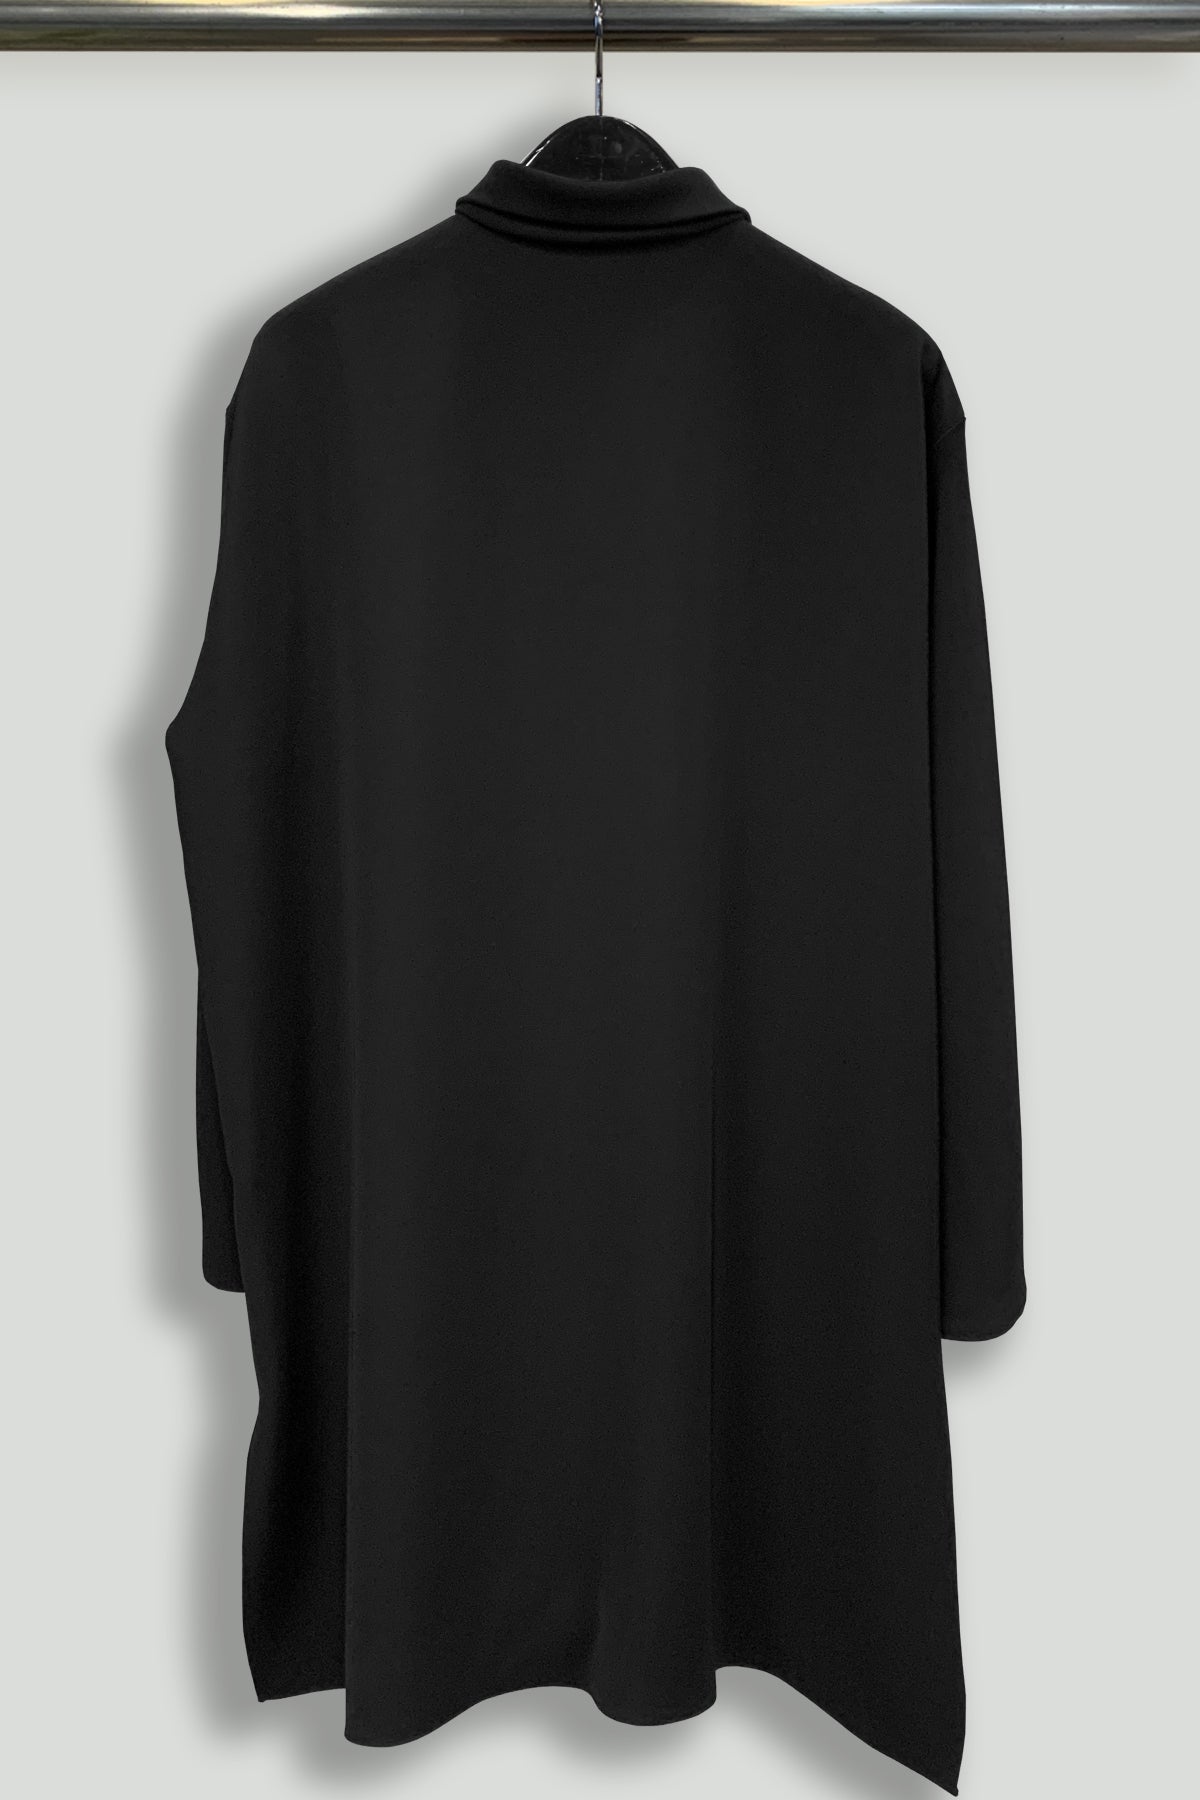 Black Microfiber Smart Gab One-Size-Fits-All Big Shirt - Hanger Back